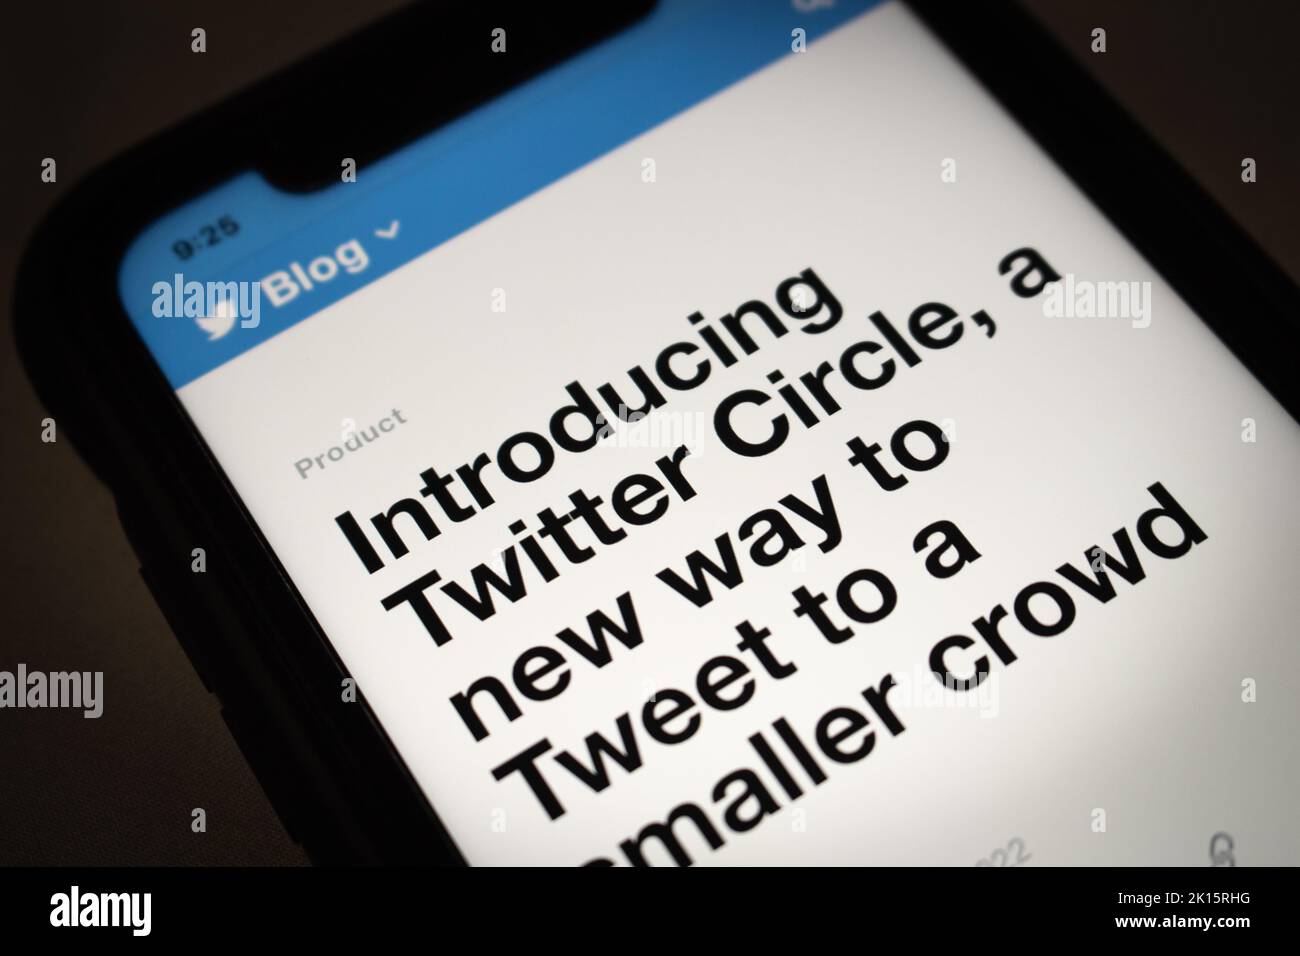 Blog-Post über Twitter Circle aus Twitter offiziellen Blog in dunkler Stimmung. Twitter Circle ist eine Möglichkeit, Tweets an ausgewählte Personen oder eine kleinere Menge zu senden Stockfoto